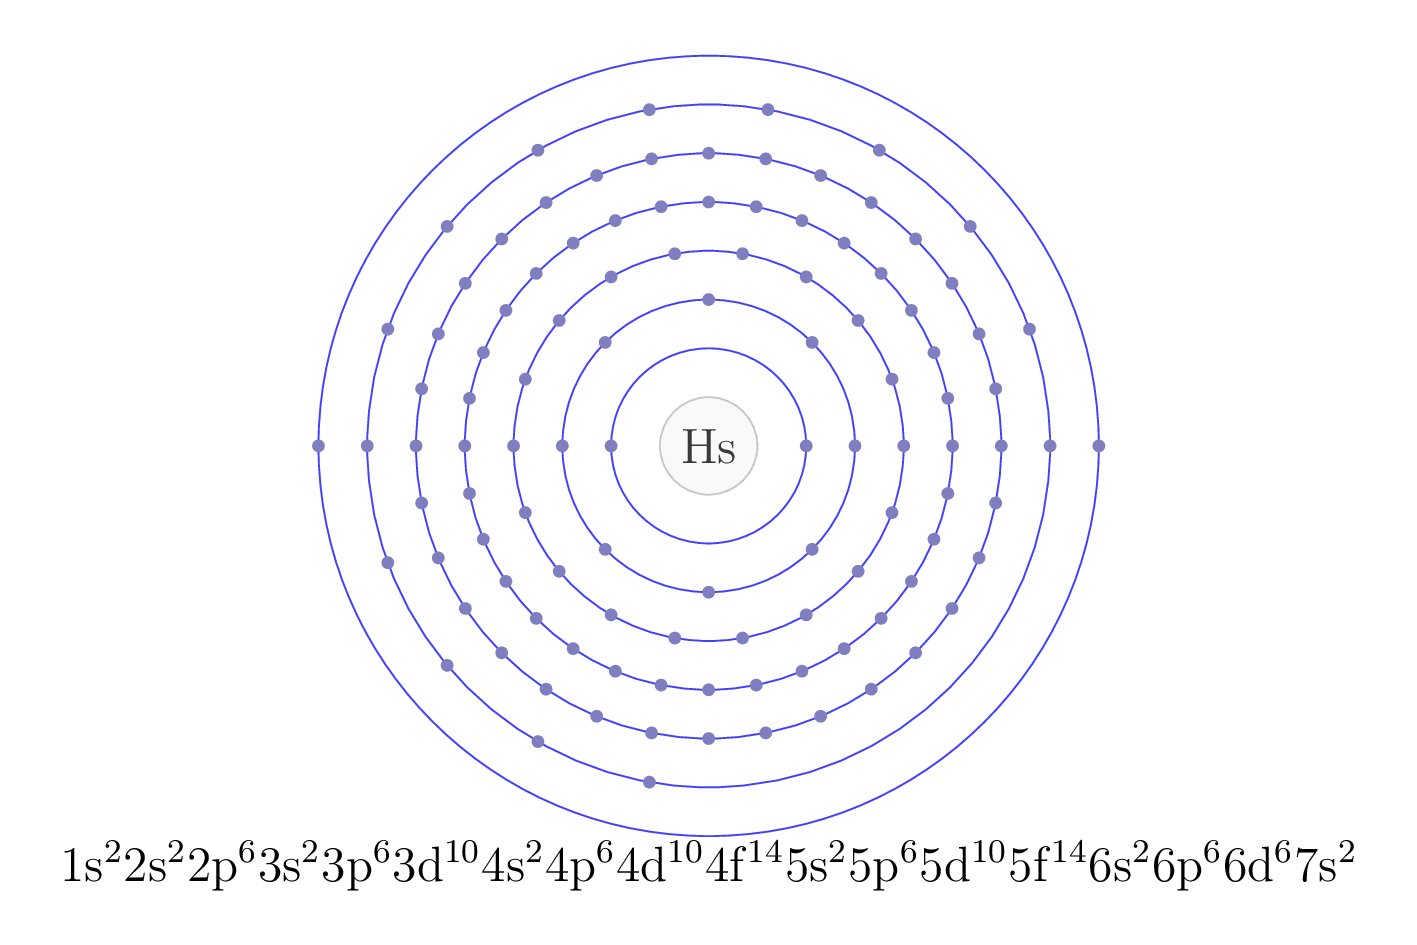 electron configuration of element Hs